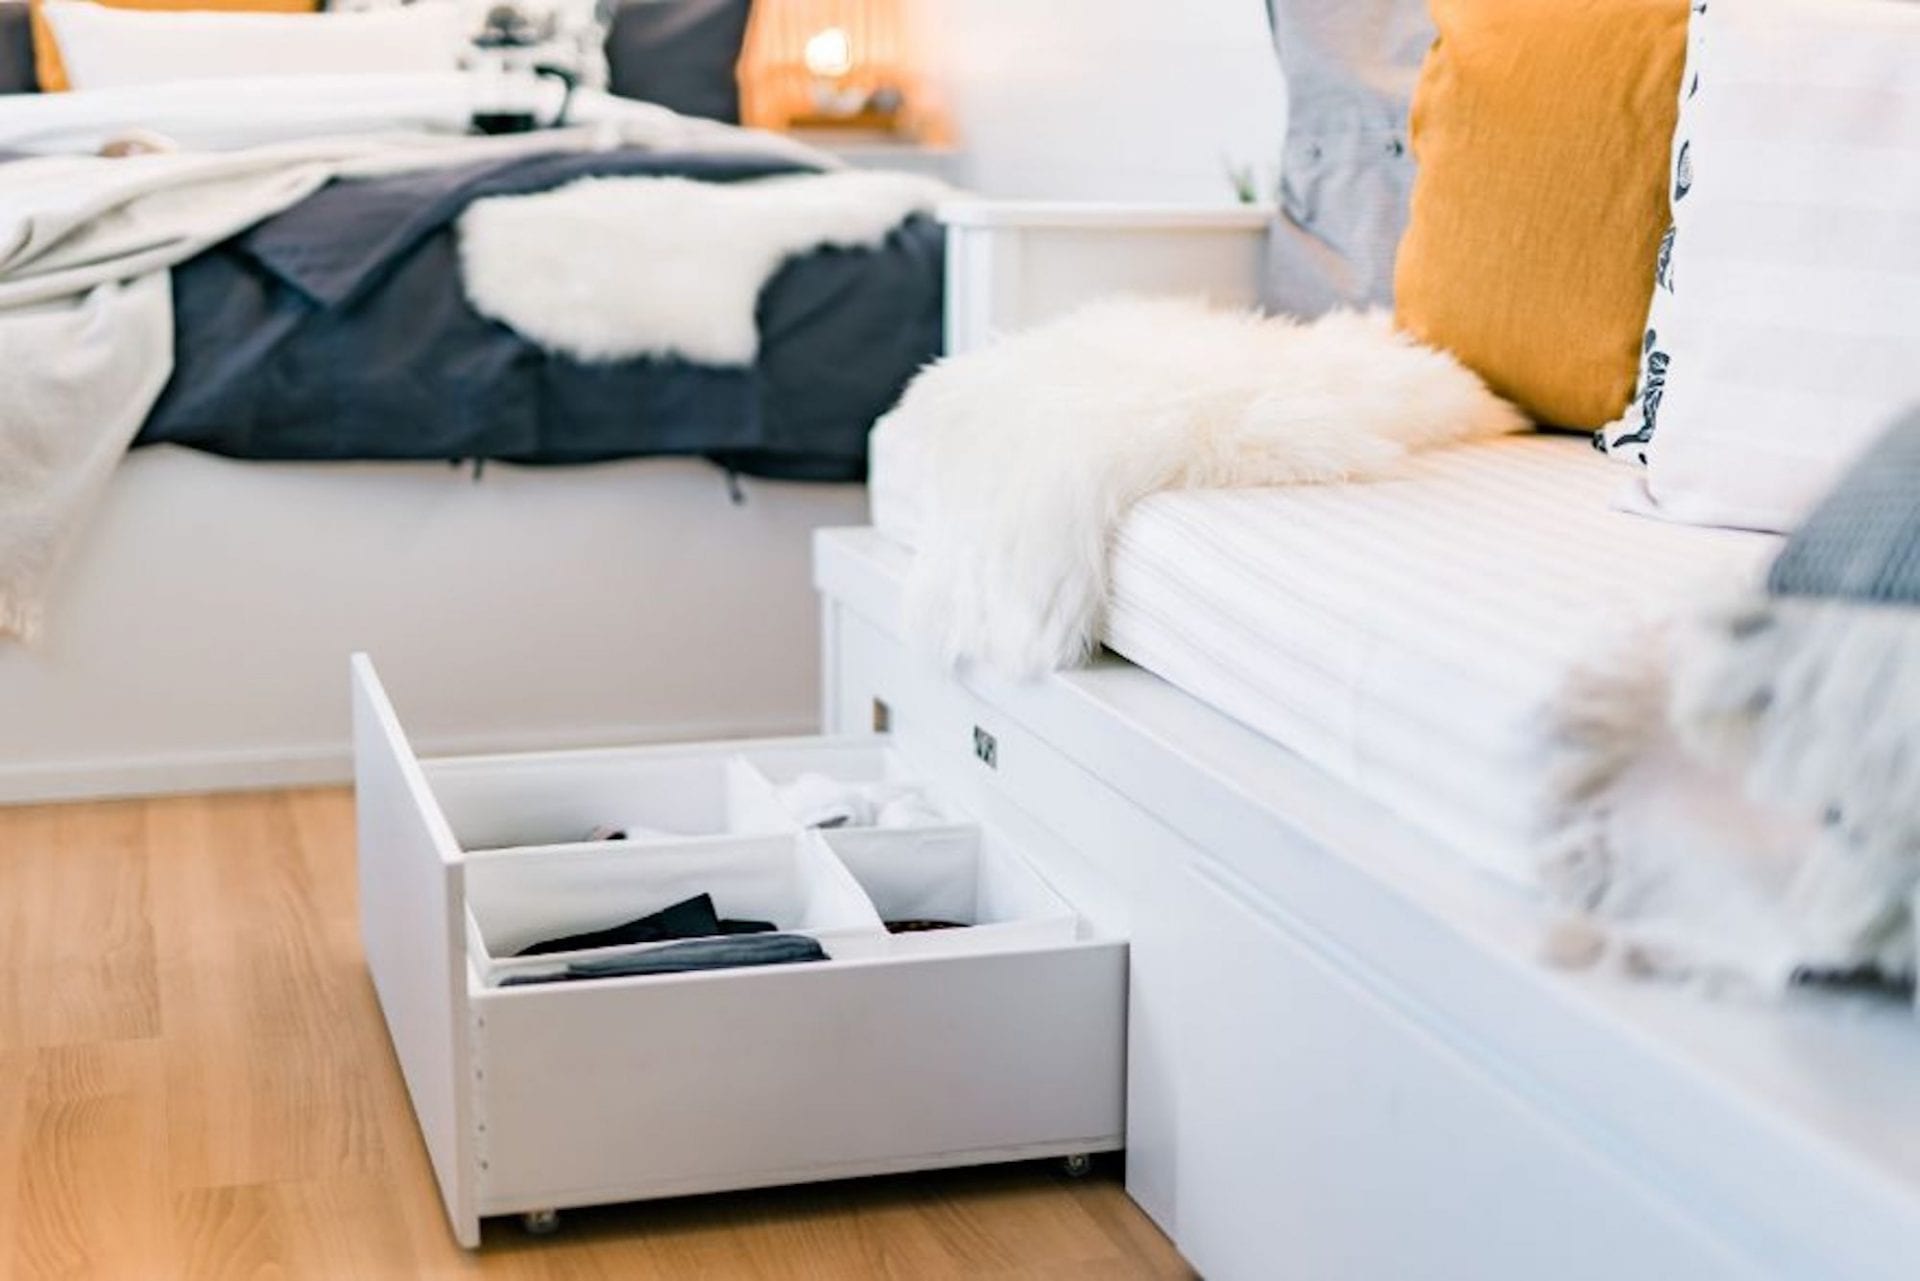 IKEA commercialise une tiny house écoresponsable et minimaliste de 17m2